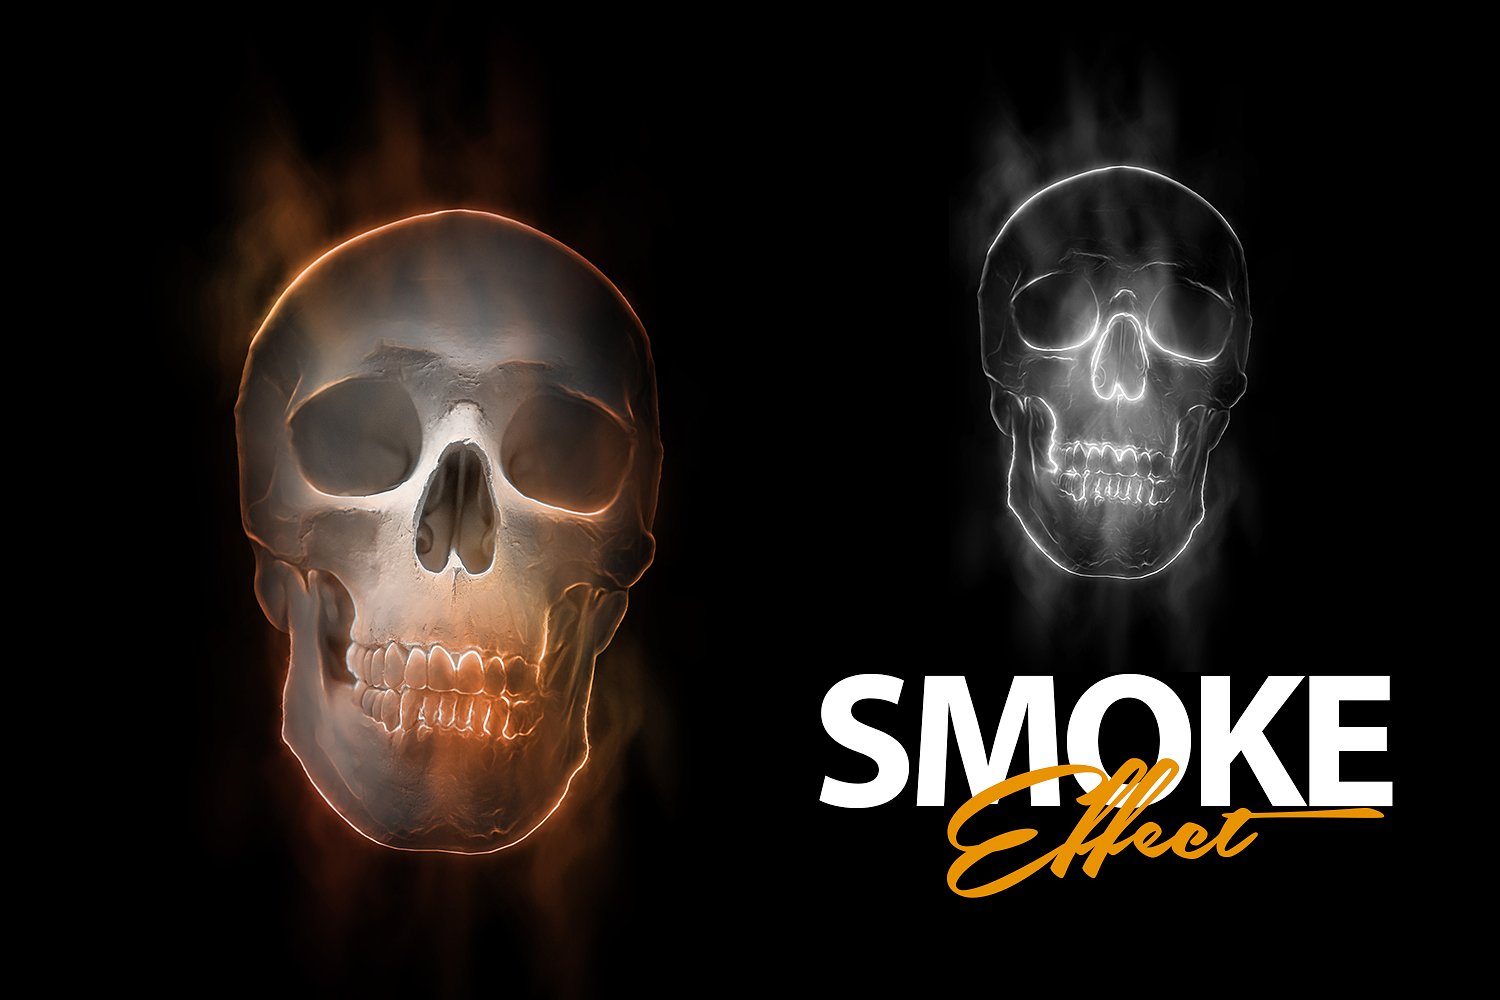 神秘的烟雾效应PS动作下载 Smoke Effect Photoshop Action [atn]插图(3)